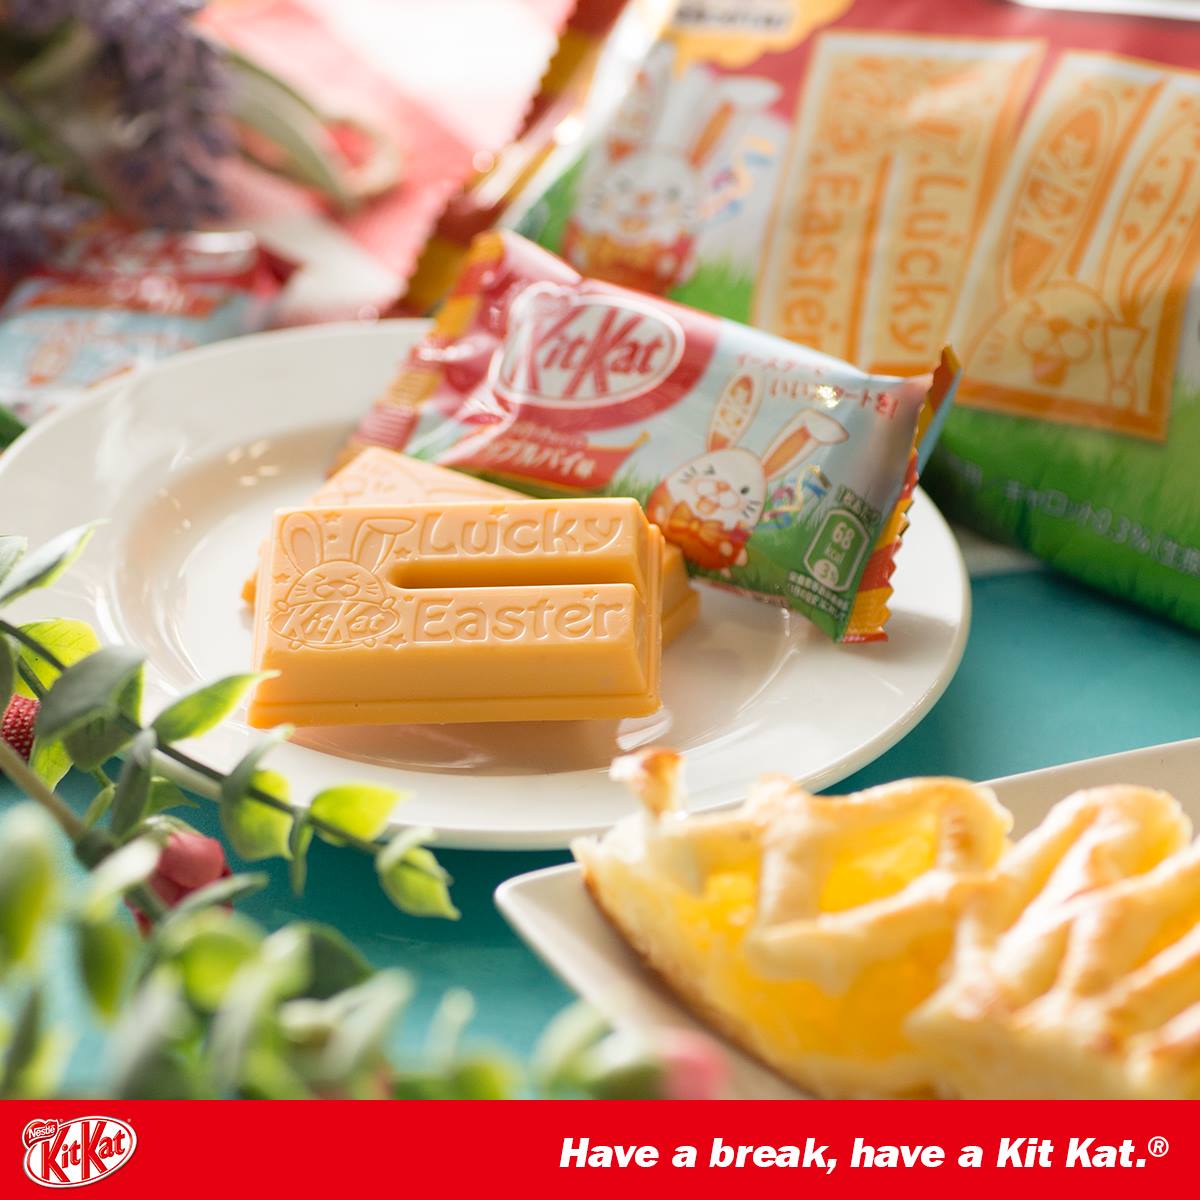 Kit Kat ญี่ปุ่นฉลองอีสเตอร์ ออกรสใหม่ ‘พายแอปเปิลแครอท’ ลายกระต่ายสุดแบ๊ว 13 ลาย